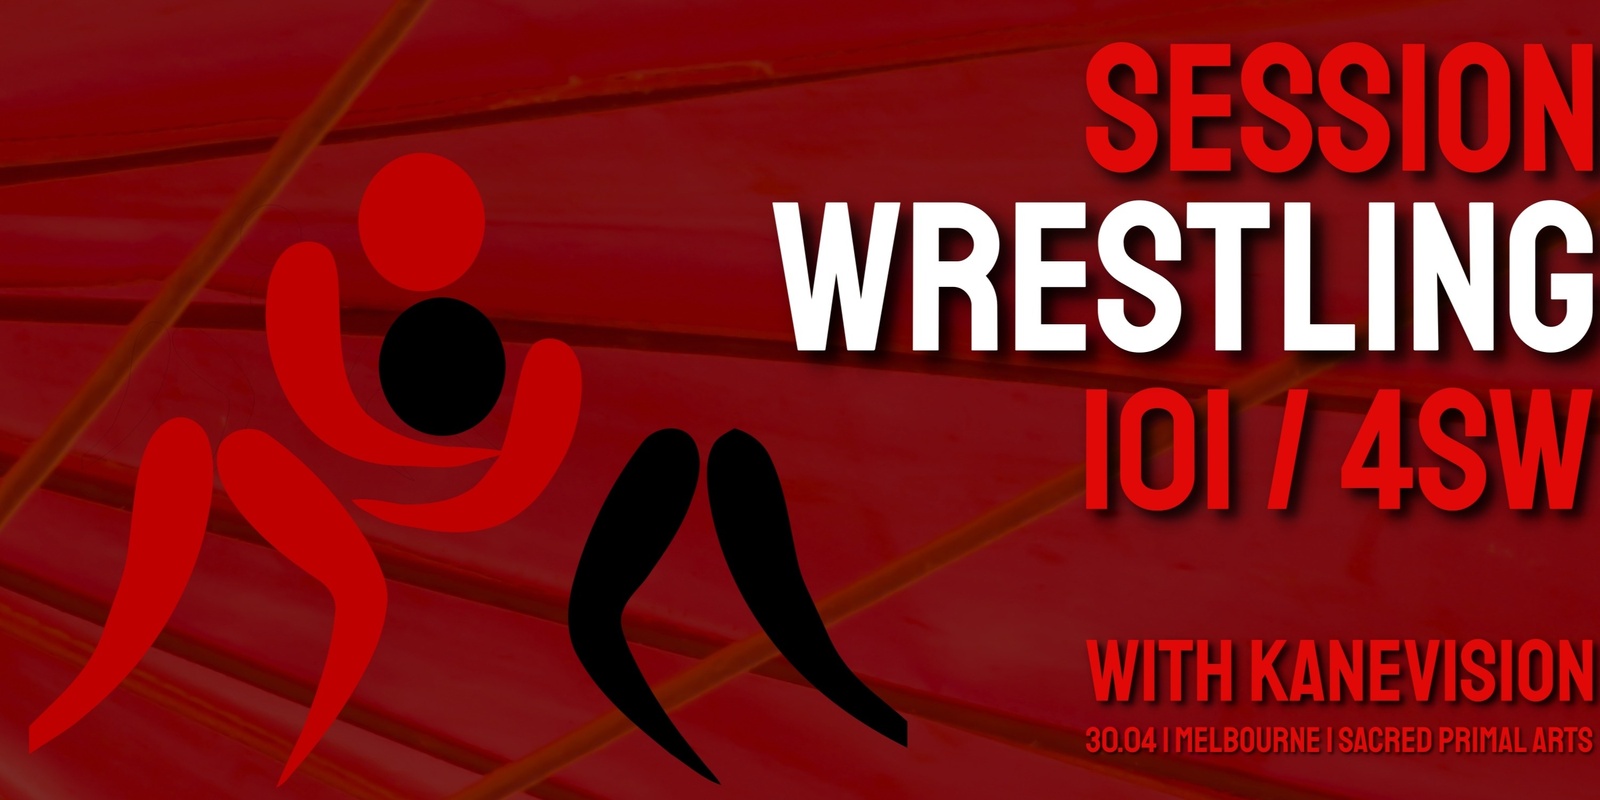 Banner image for MELBOURNE Session Wrestling 101 4SW w/ Kane Vision